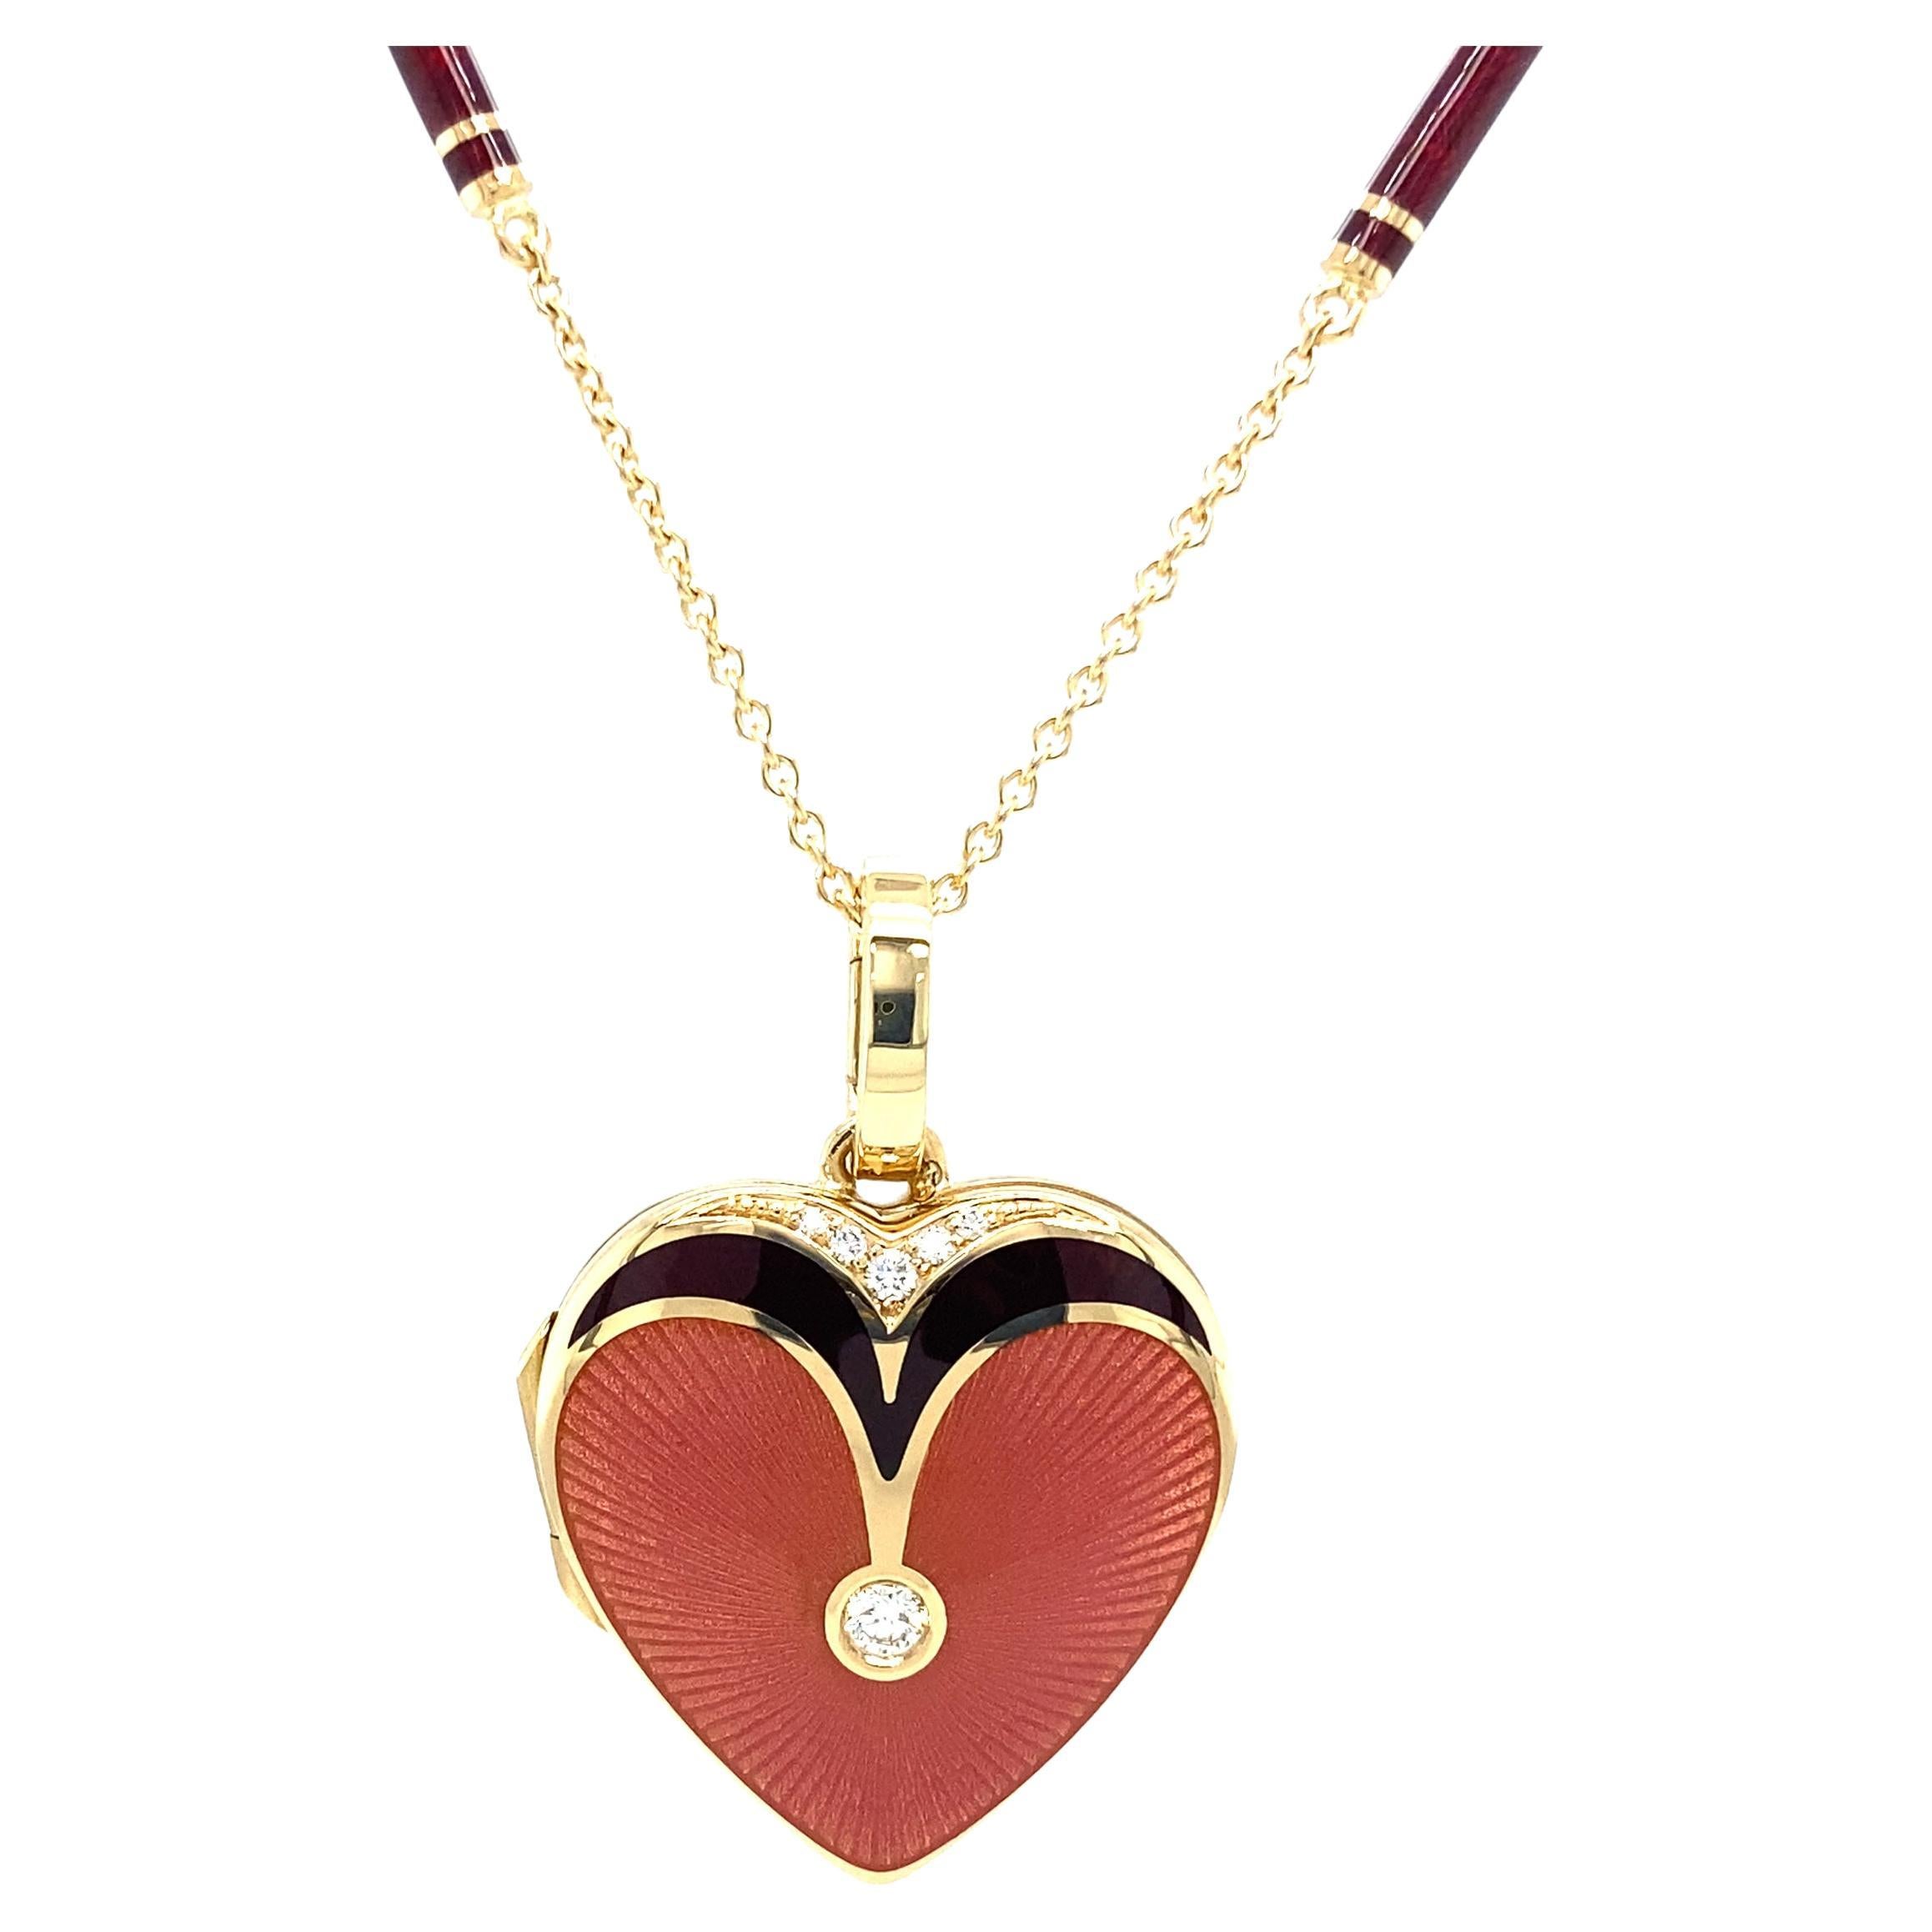 Herzförmiges Medaillon-Anhänger-Halskette aus 18 Karat Gelbgold mit rosa und roter Emaille und 6 Diamanten